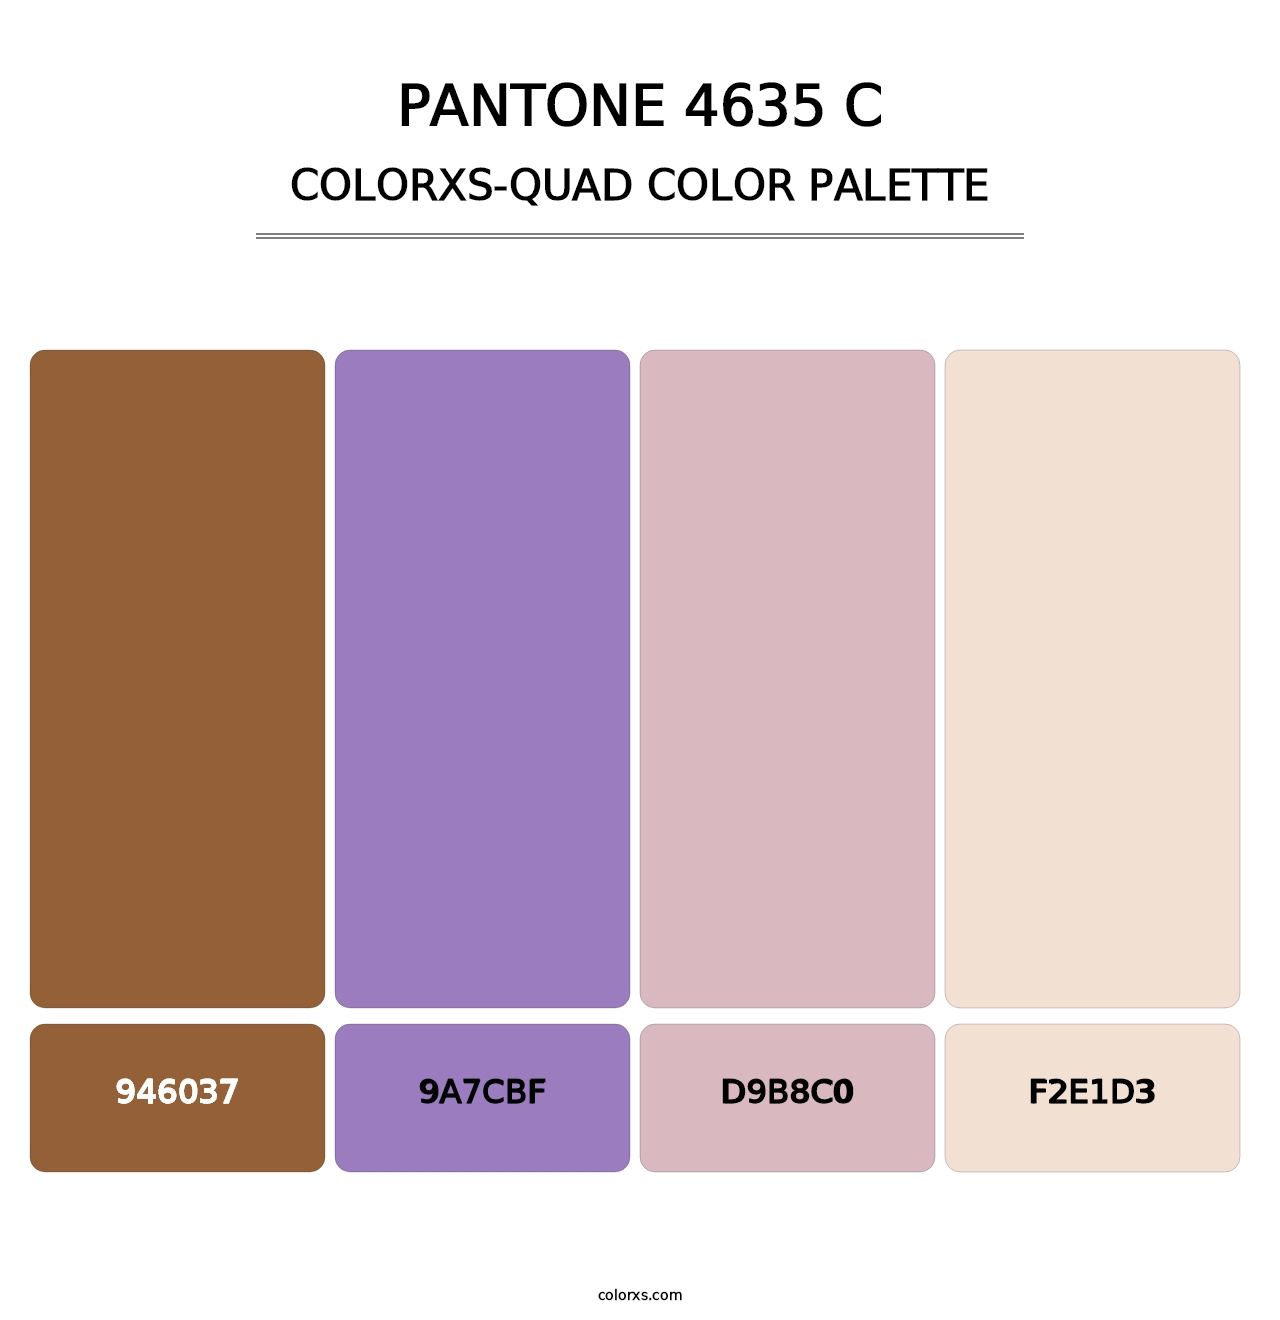 PANTONE 4635 C - Colorxs Quad Palette